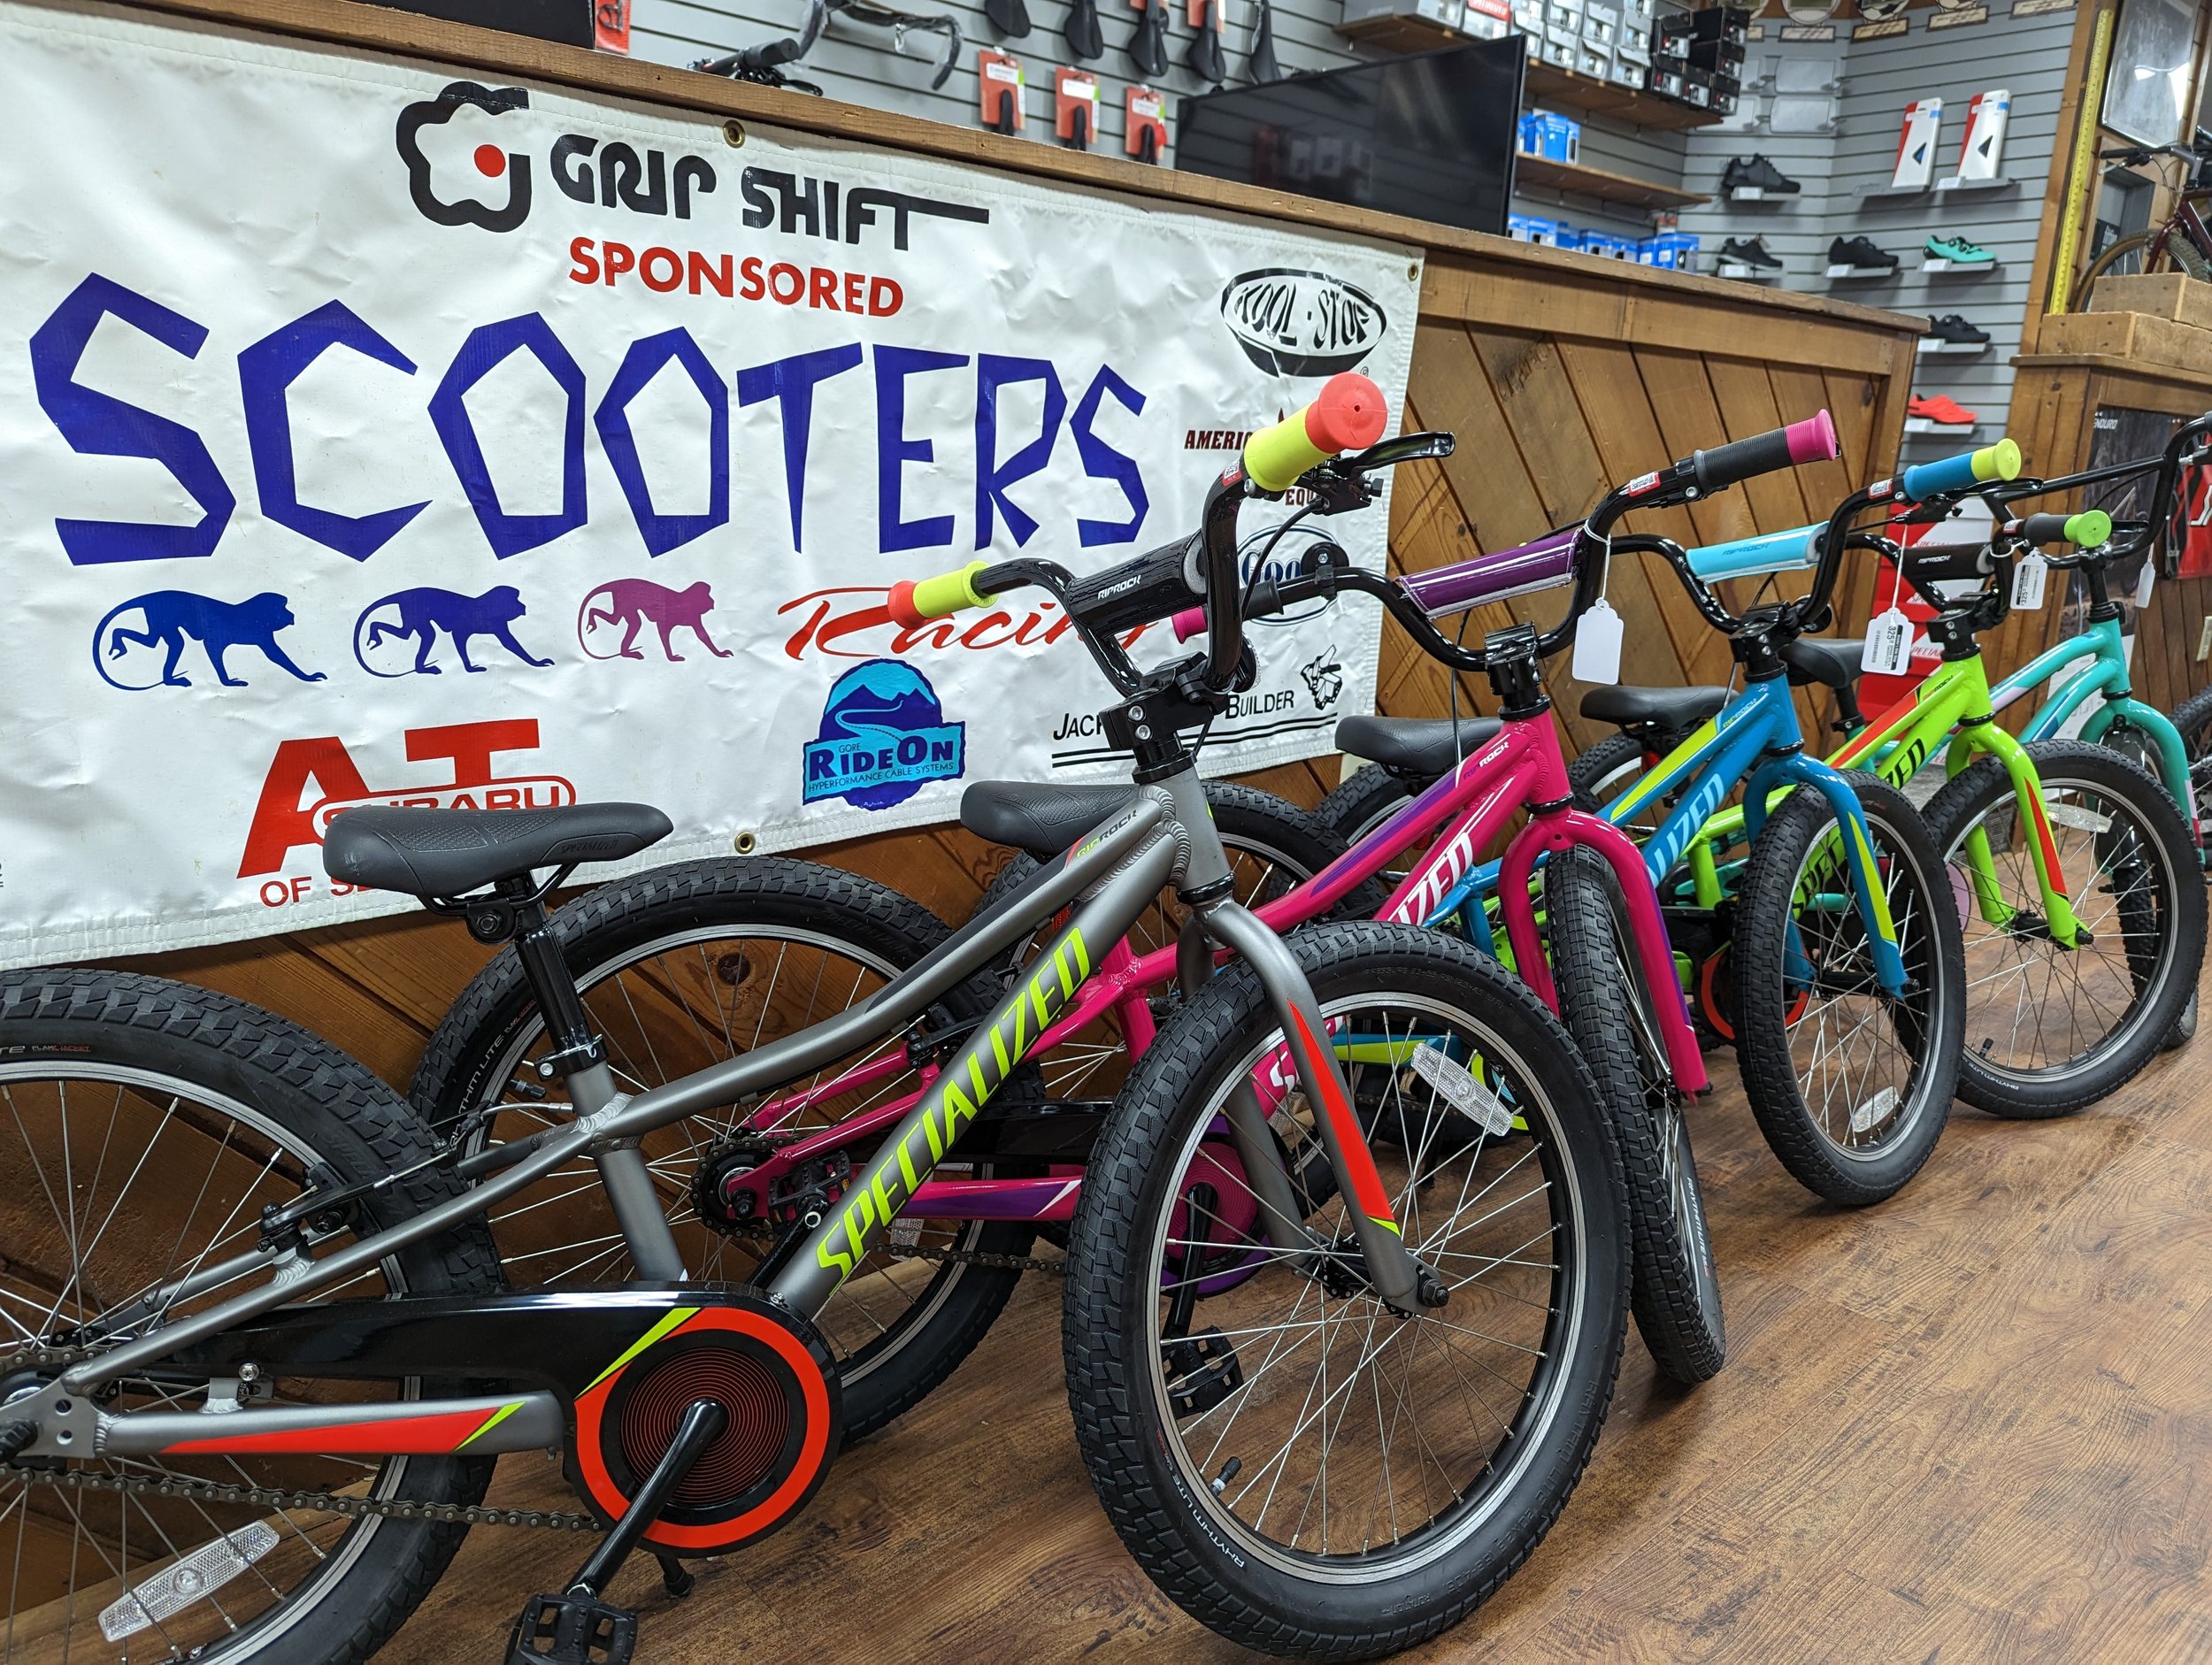 pengeoverførsel loop hundehvalp Current inventory — Scooter's Bike Shop